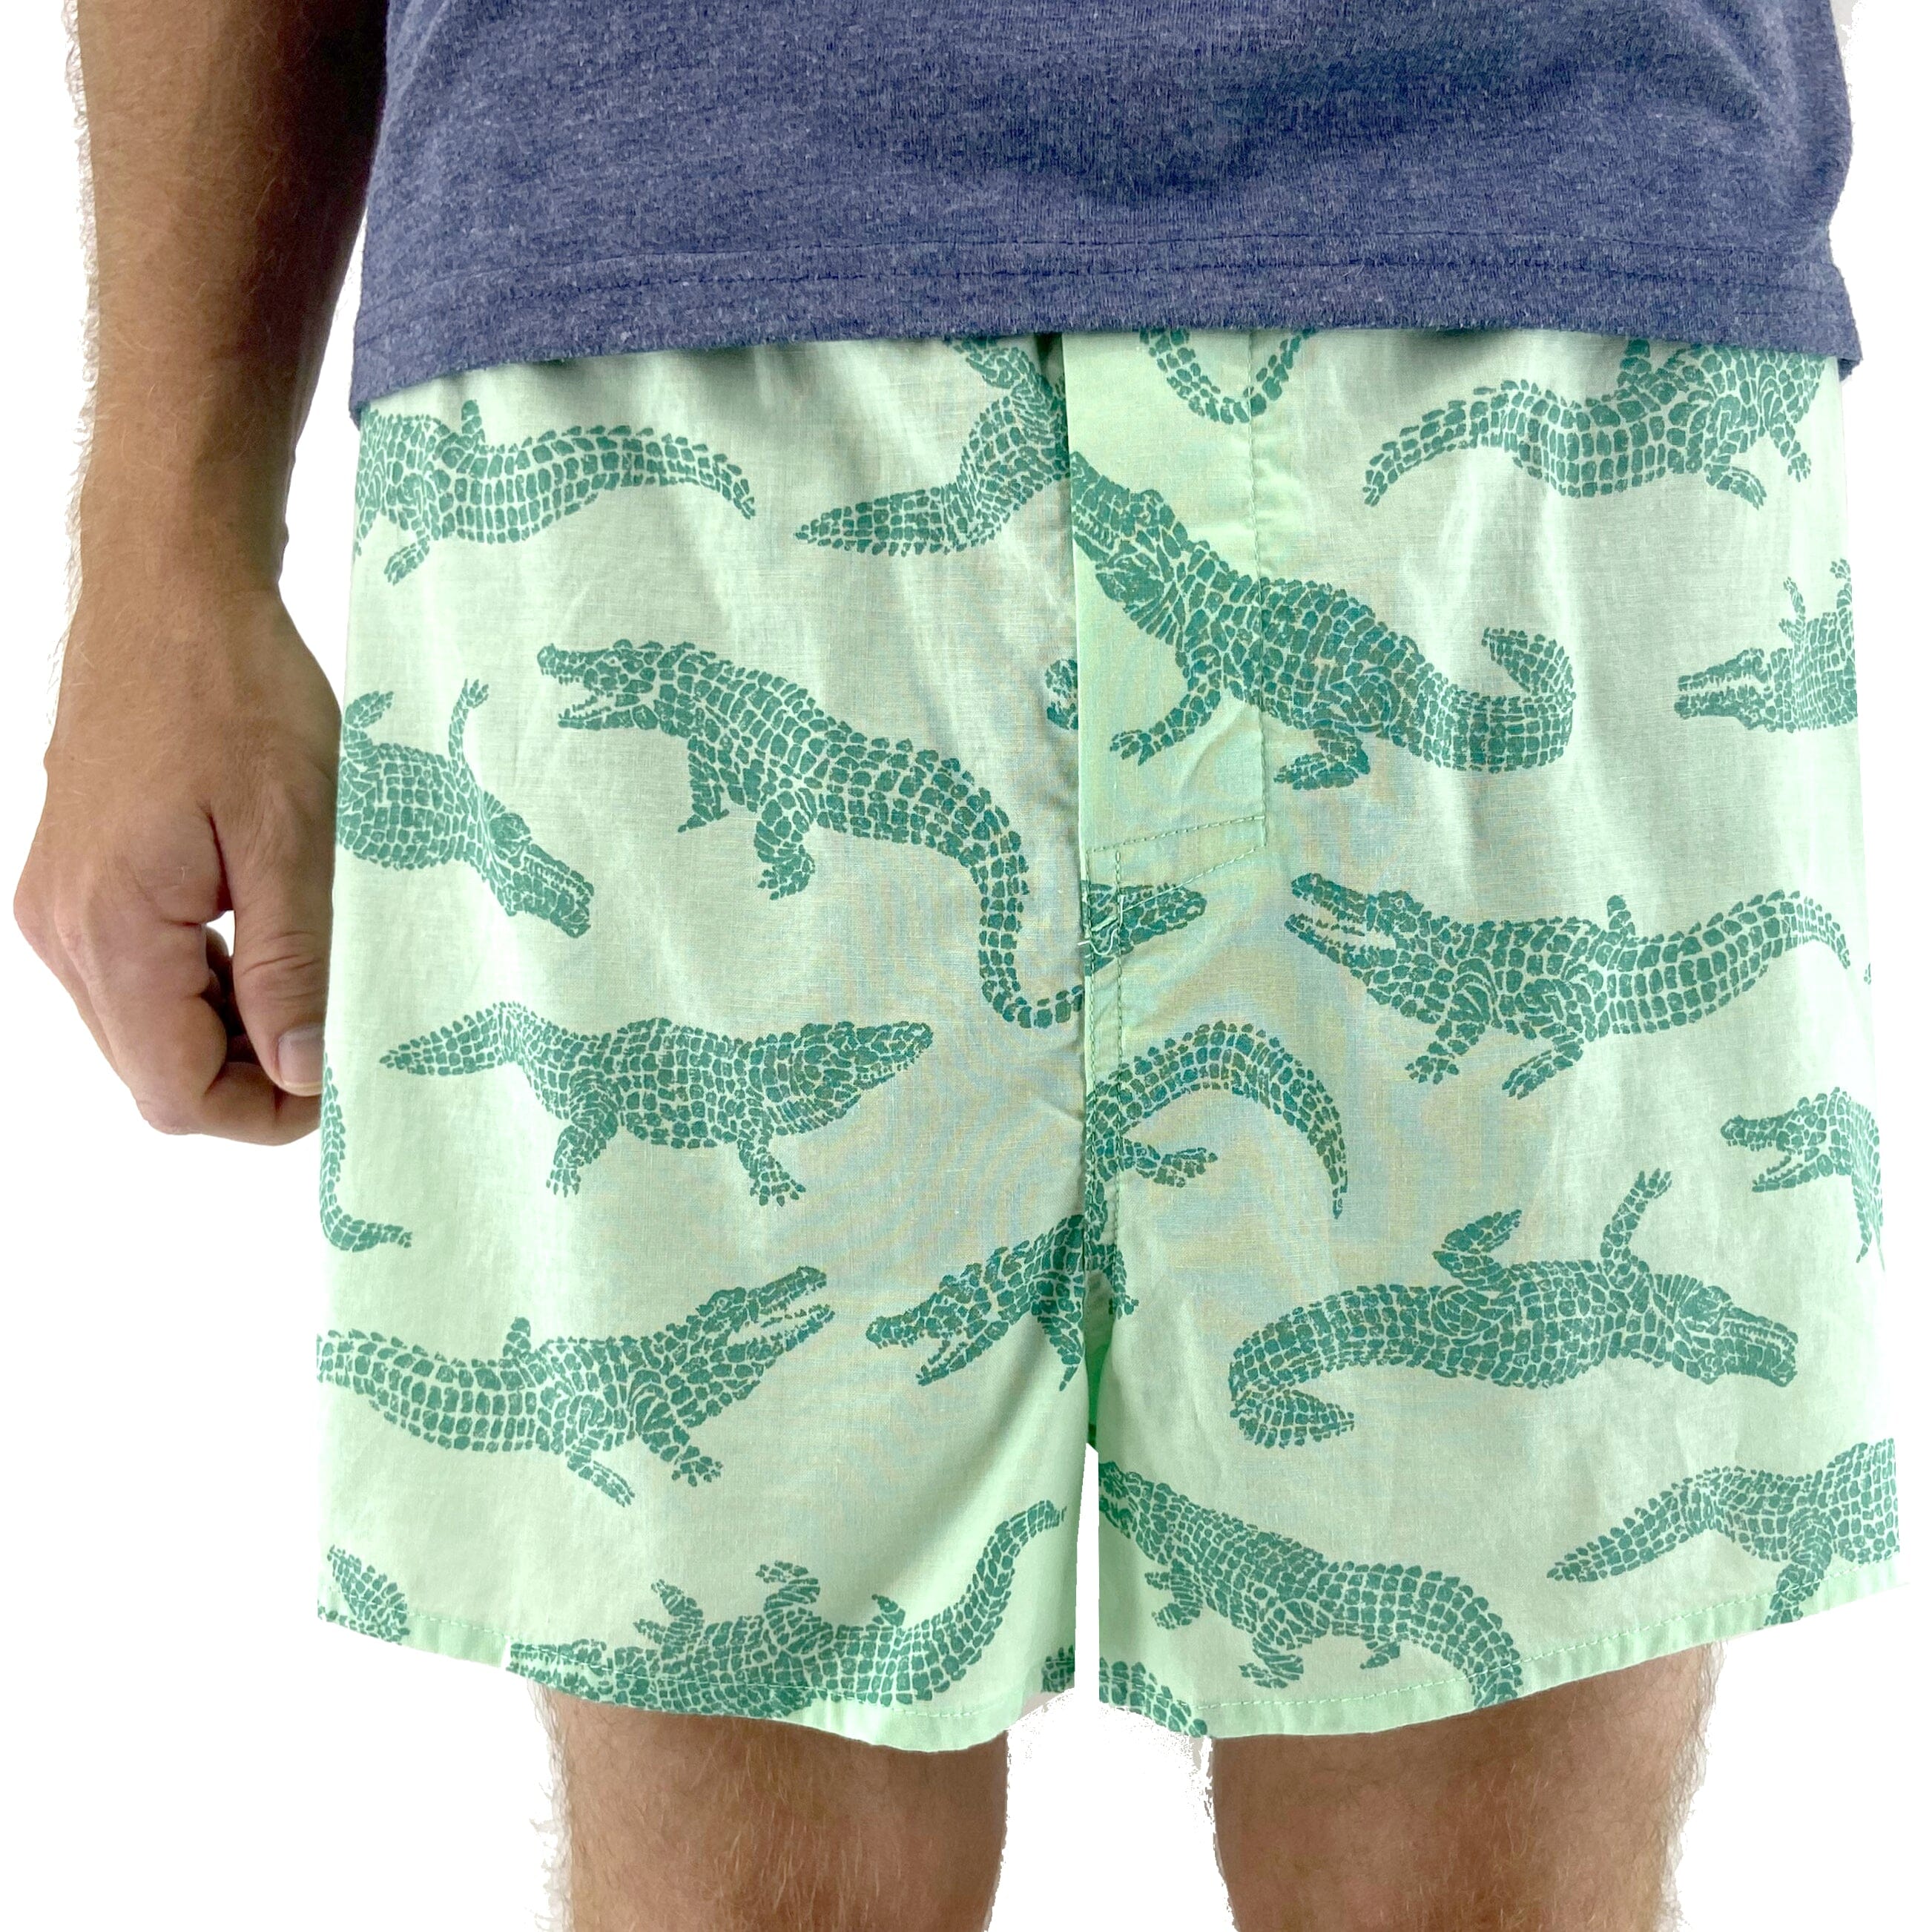 Crocodile Underwear, Men's Fashion, Bottoms, New Underwear on